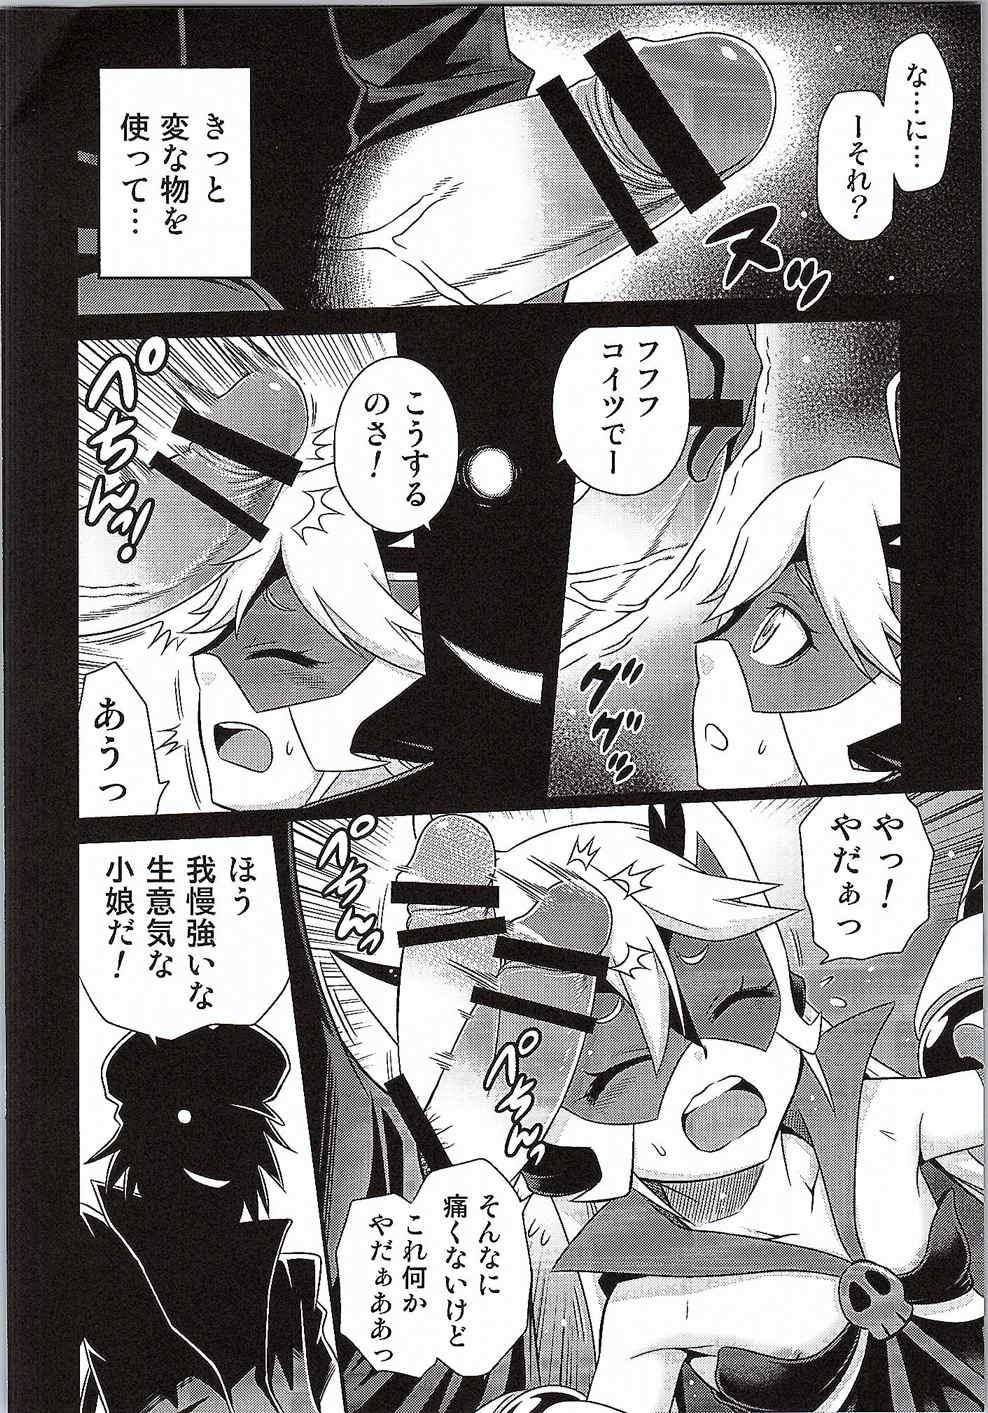 For Tenshi-chan no Yume wa Yoru Hiraku - Yoru no yatterman Trimmed - Page 3